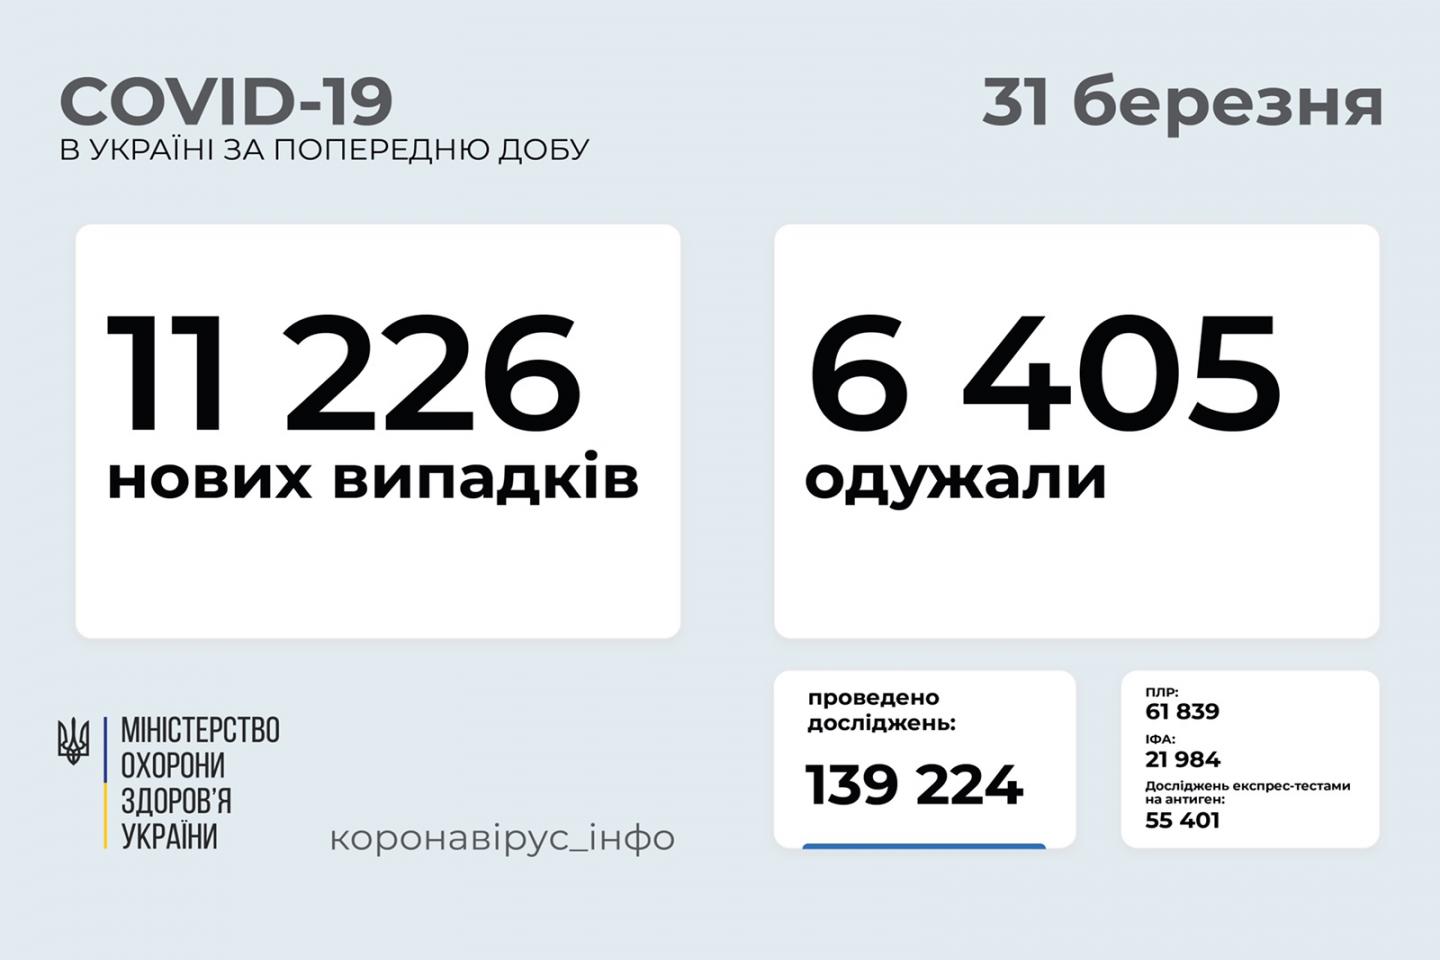 http://dunrada.gov.ua/uploadfile/archive_news/2021/03/31/2021-03-31_1543/images/images-22059.jpg